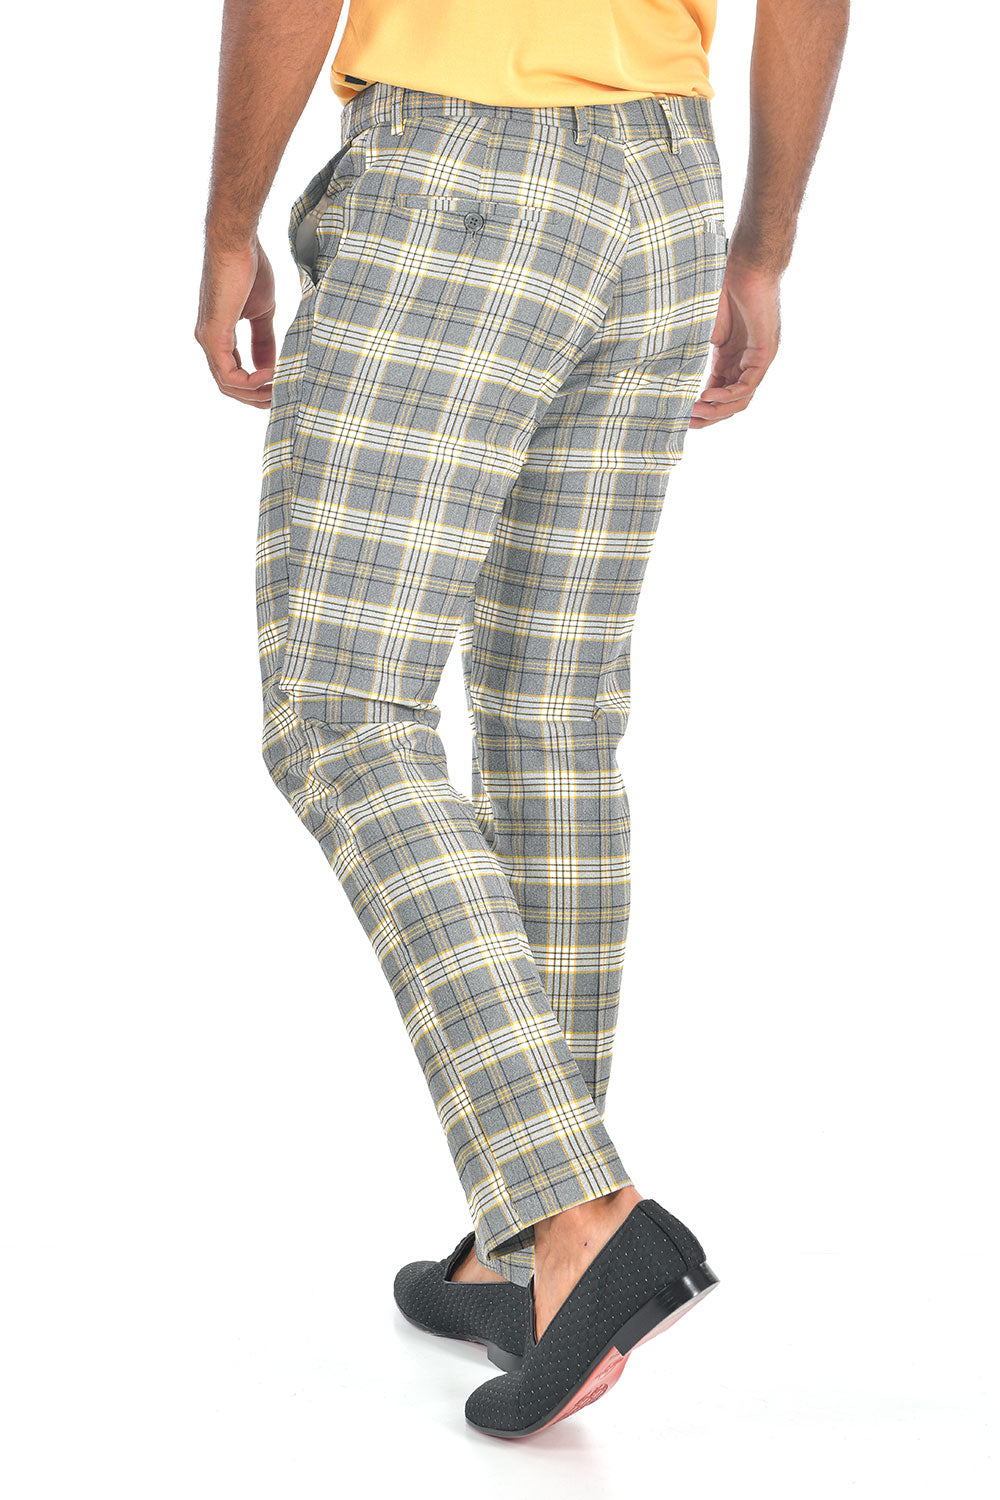 BARABAS men's checkered plaid Grey and Yellow chino pants CP89